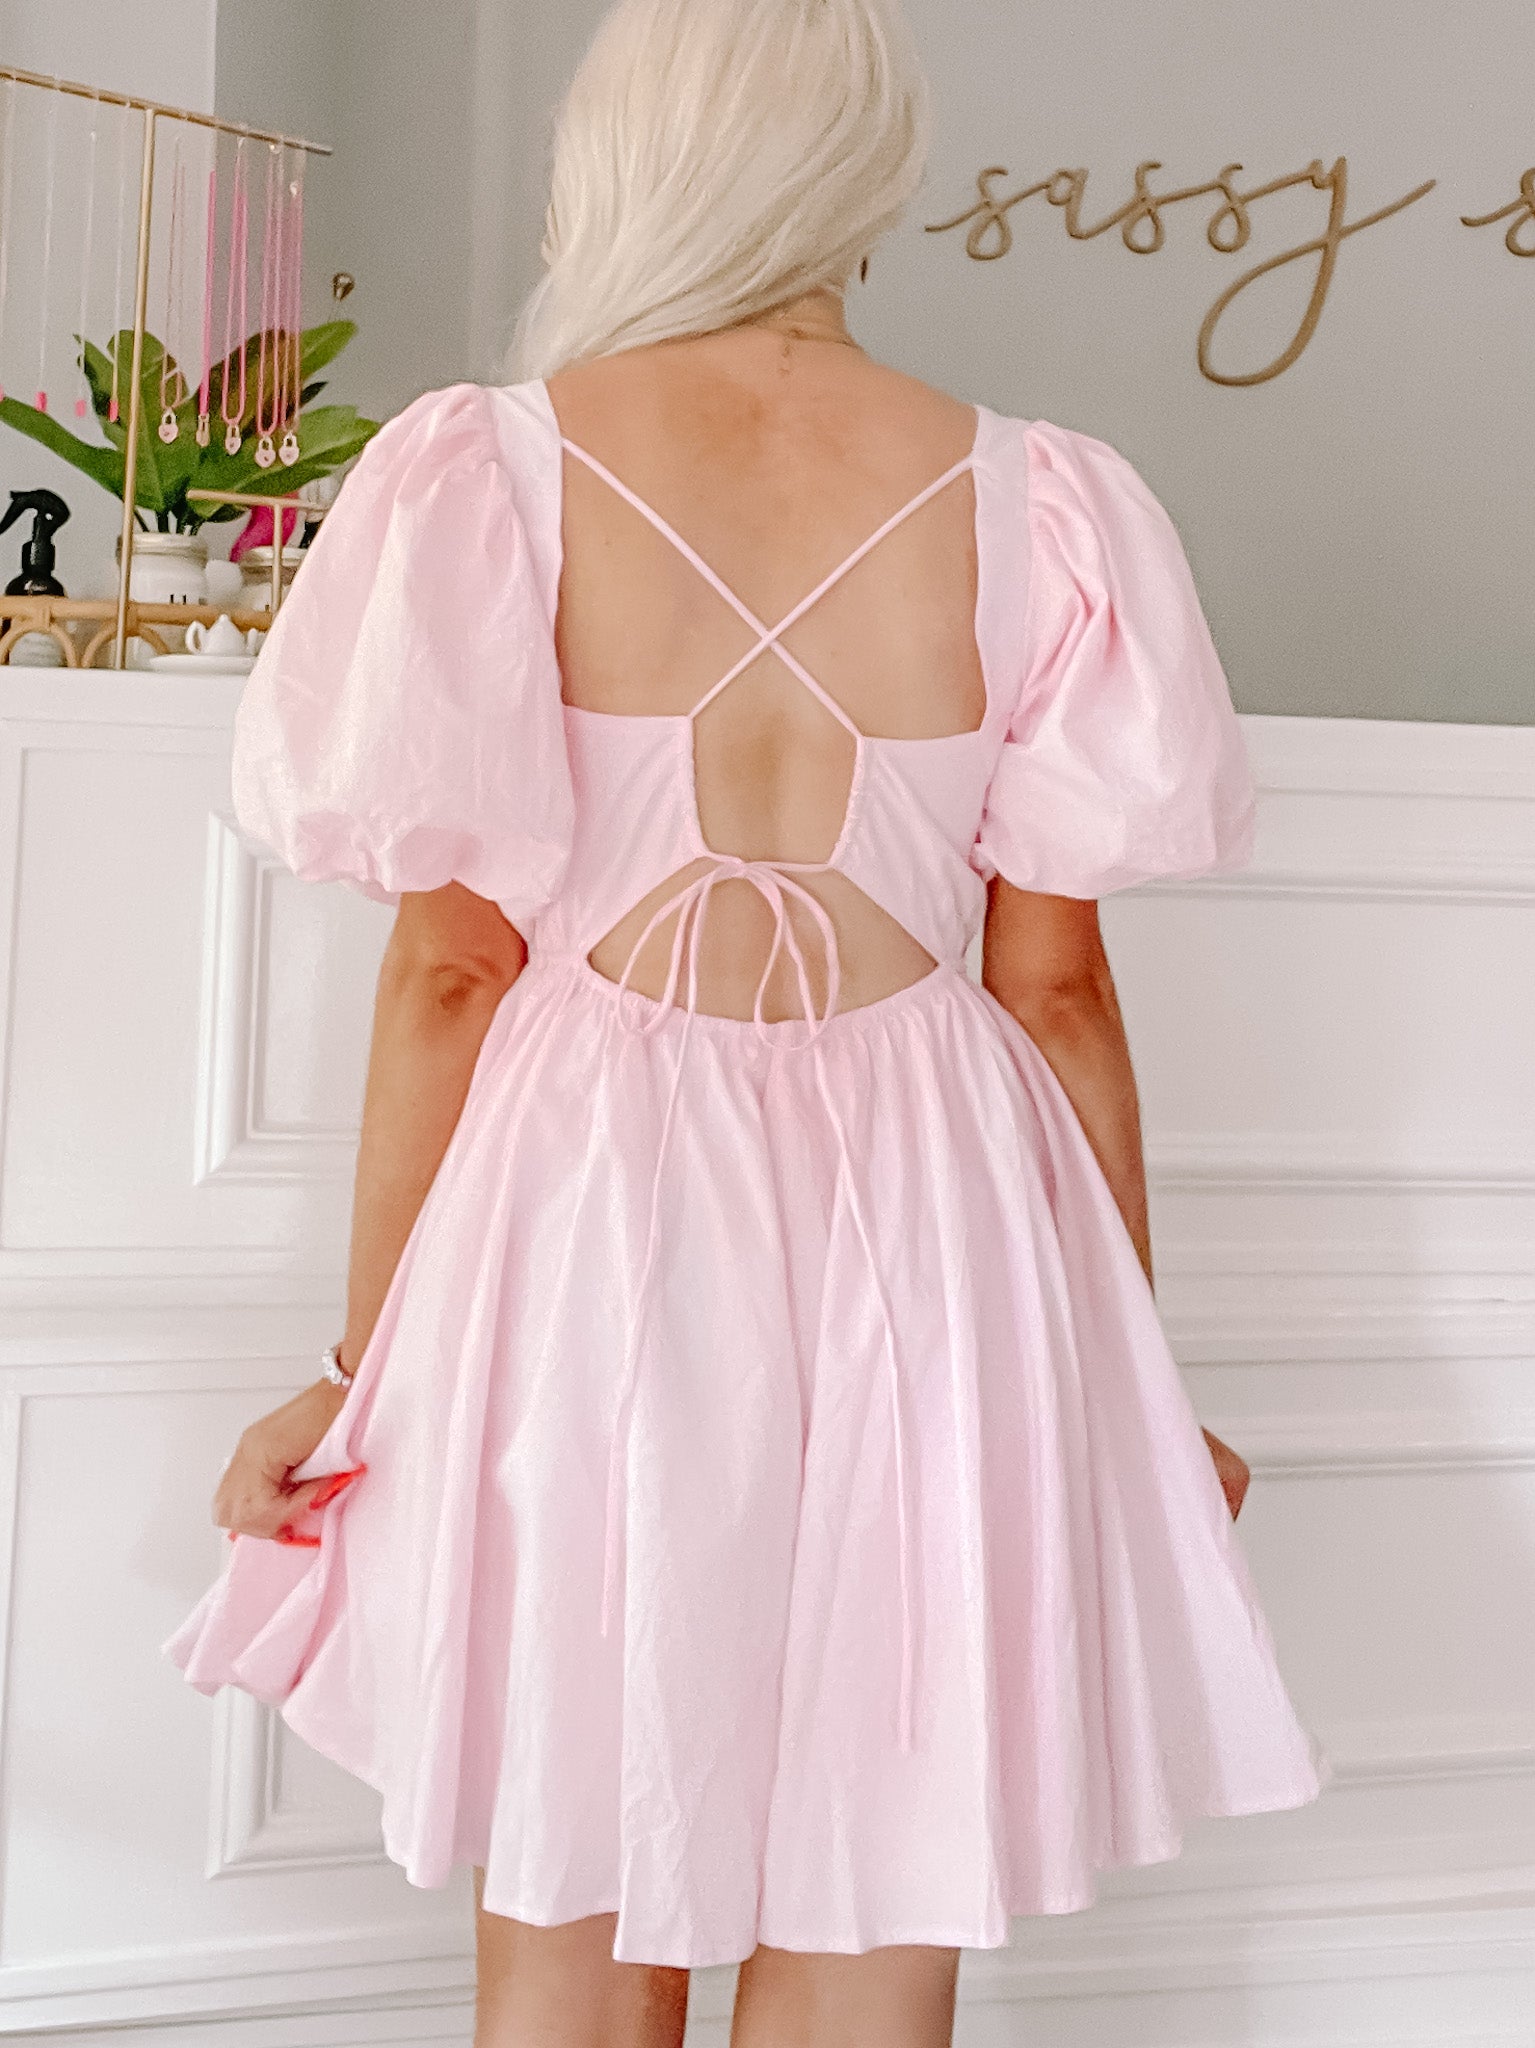 Blush for Brunch Preppy Pink Dress | sassyshortcake.com | Sassy Shortcake